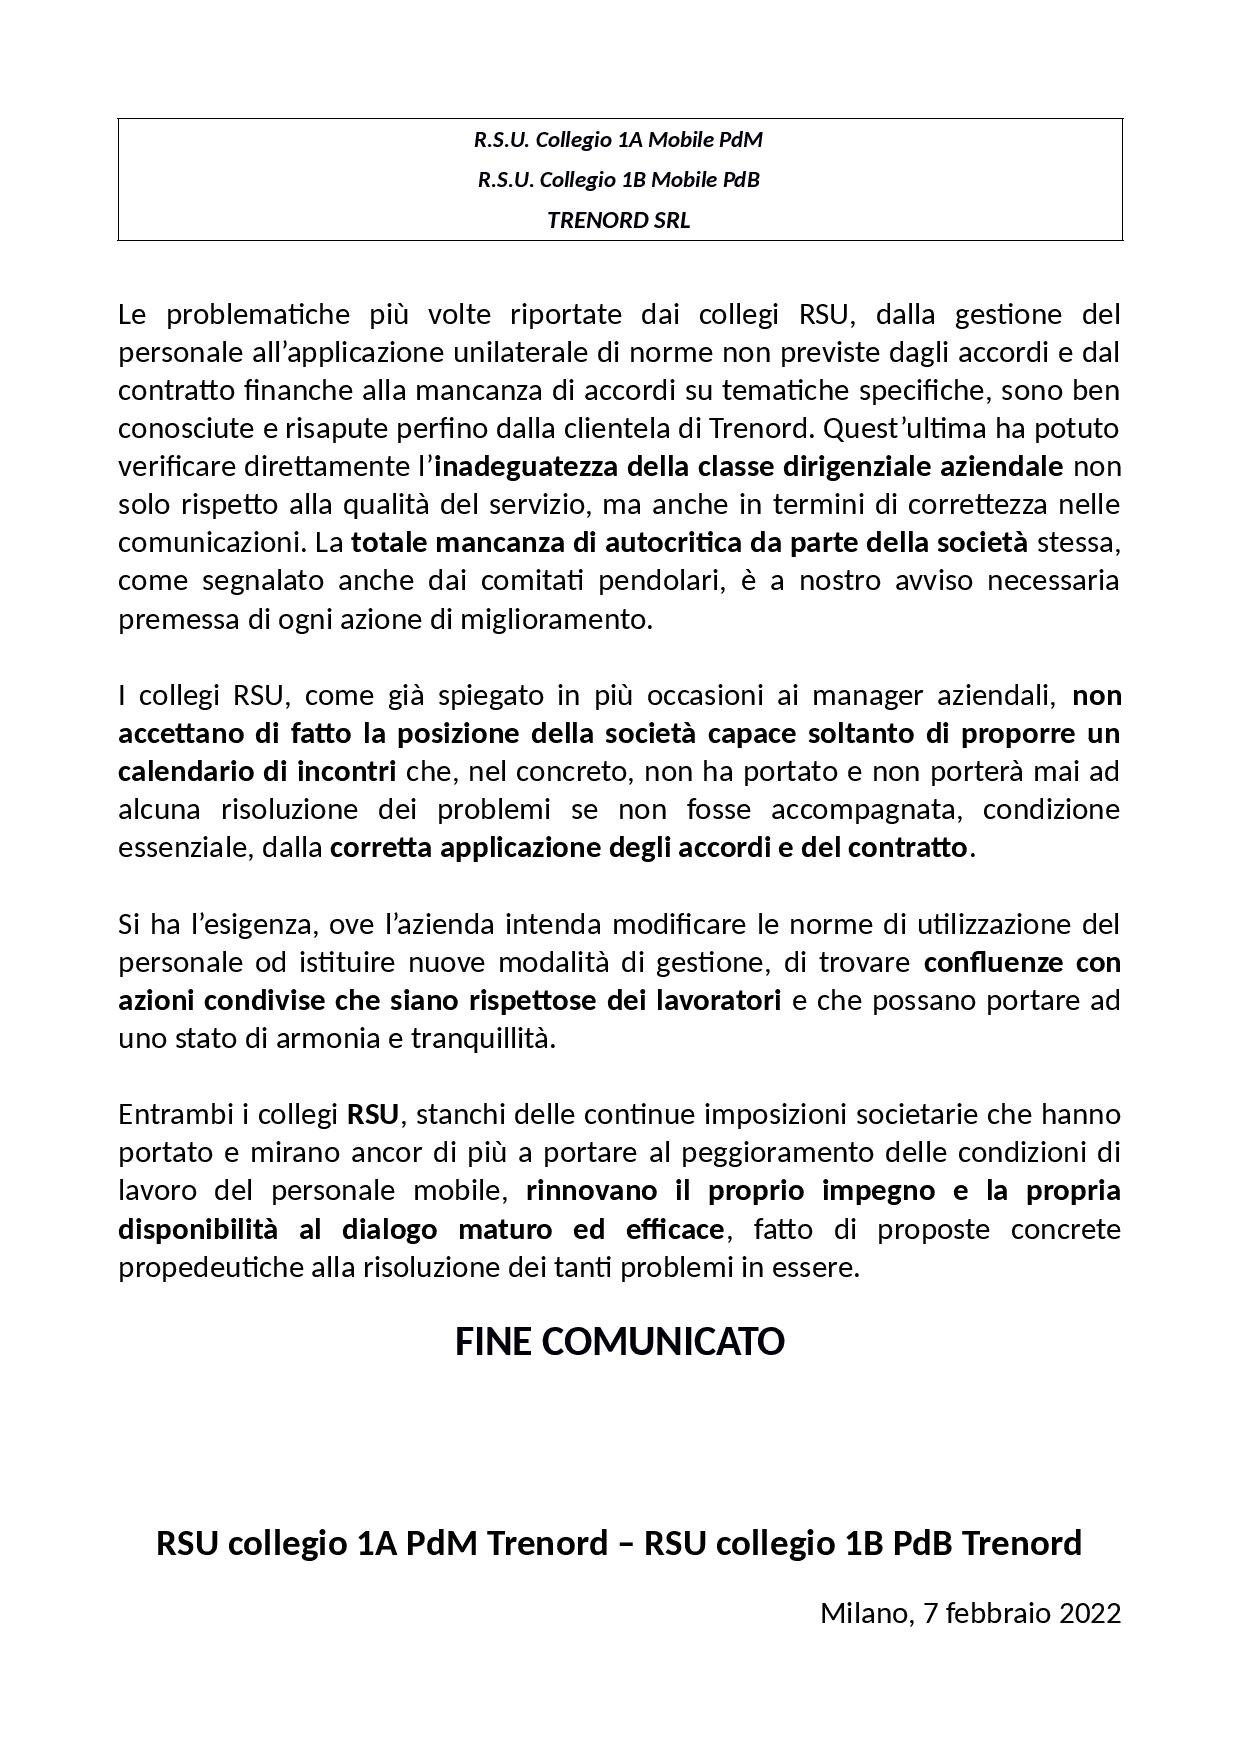 Trenord Comunicato RSU Mobile Sciopero 8 marzo 2022 page 002